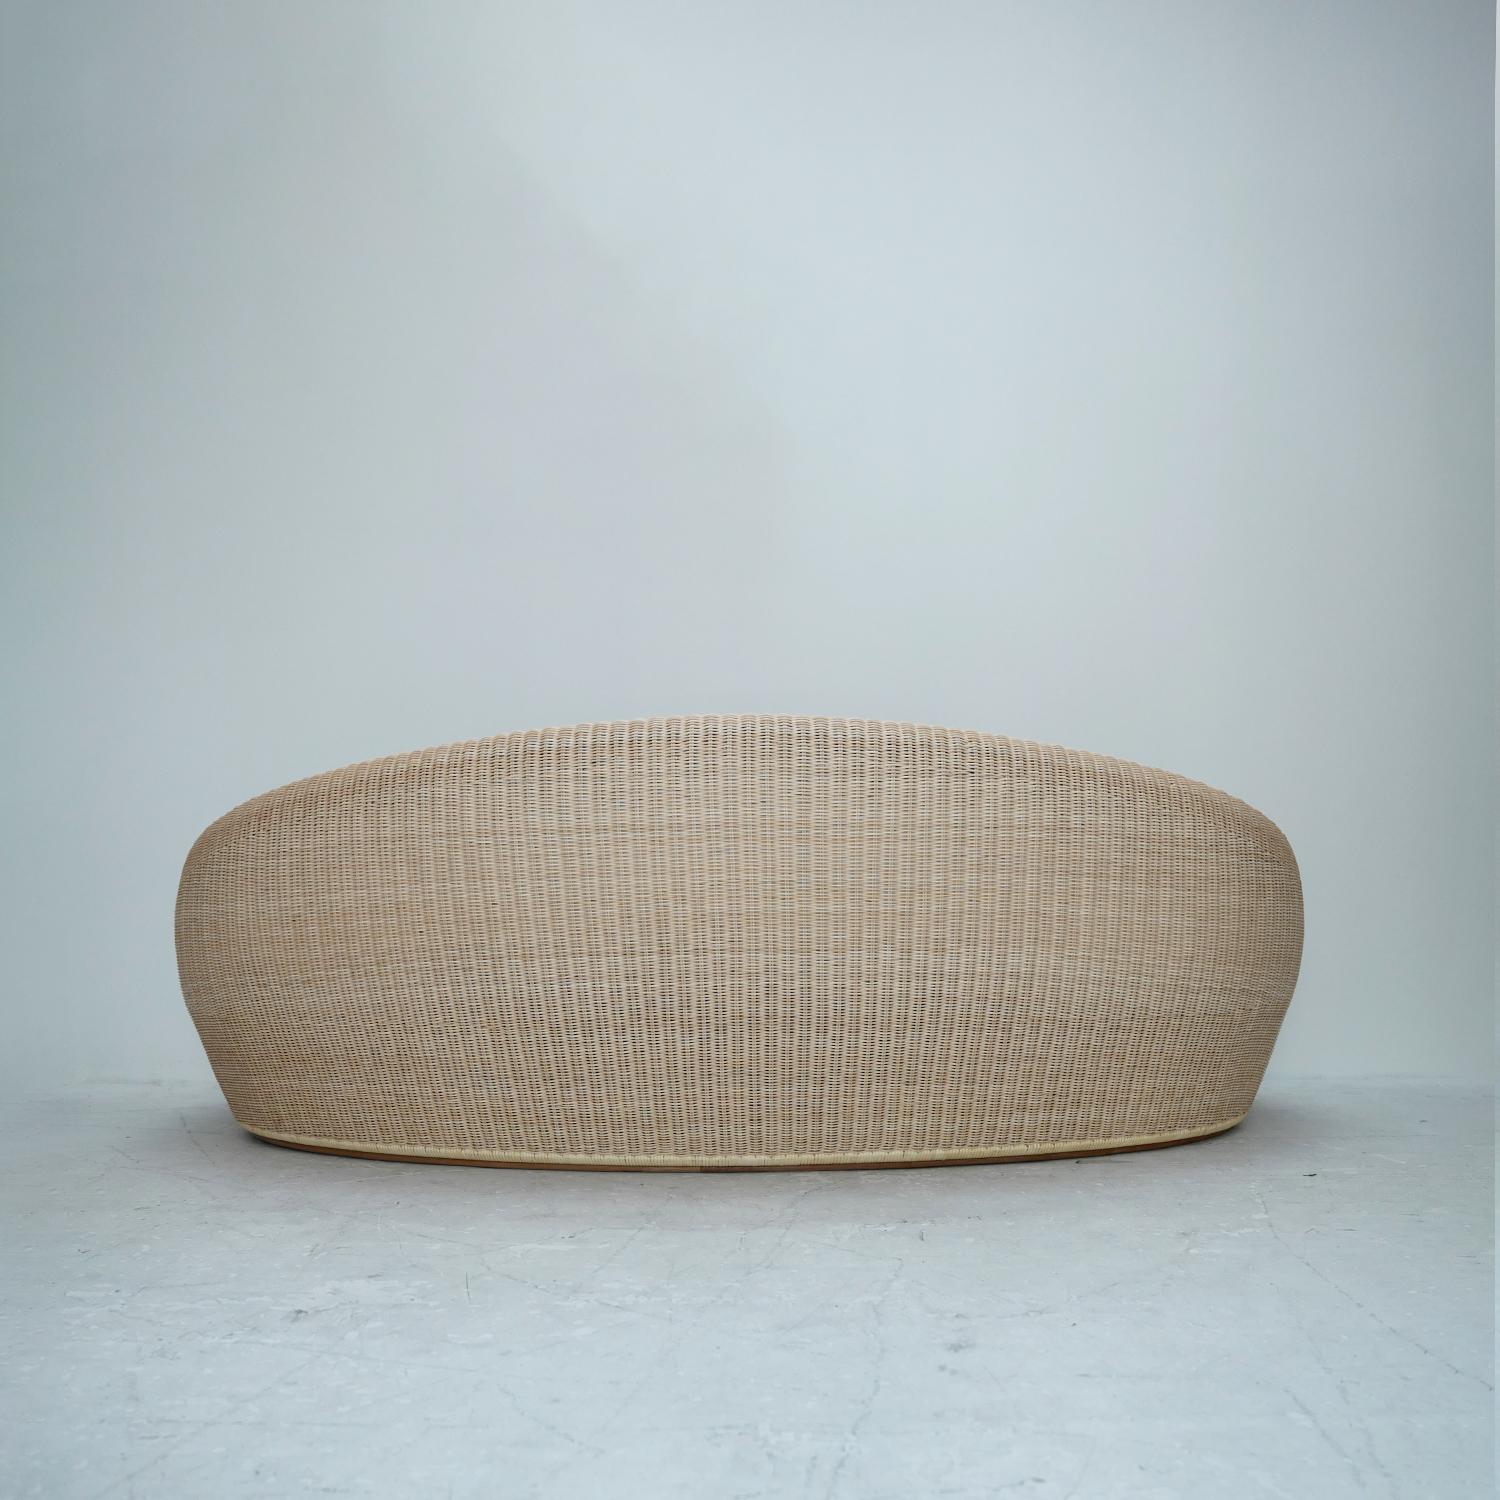 Il s'agit d'un modèle sur mesure, exclusif à CASA DE, produit par YMK Nagaoka (anciennement Yamakawa Rattan), qui fabrique des meubles en rotin depuis les années 1950. Les courbes souples, les couleurs douces d'origine naturelle et la beauté qui ne